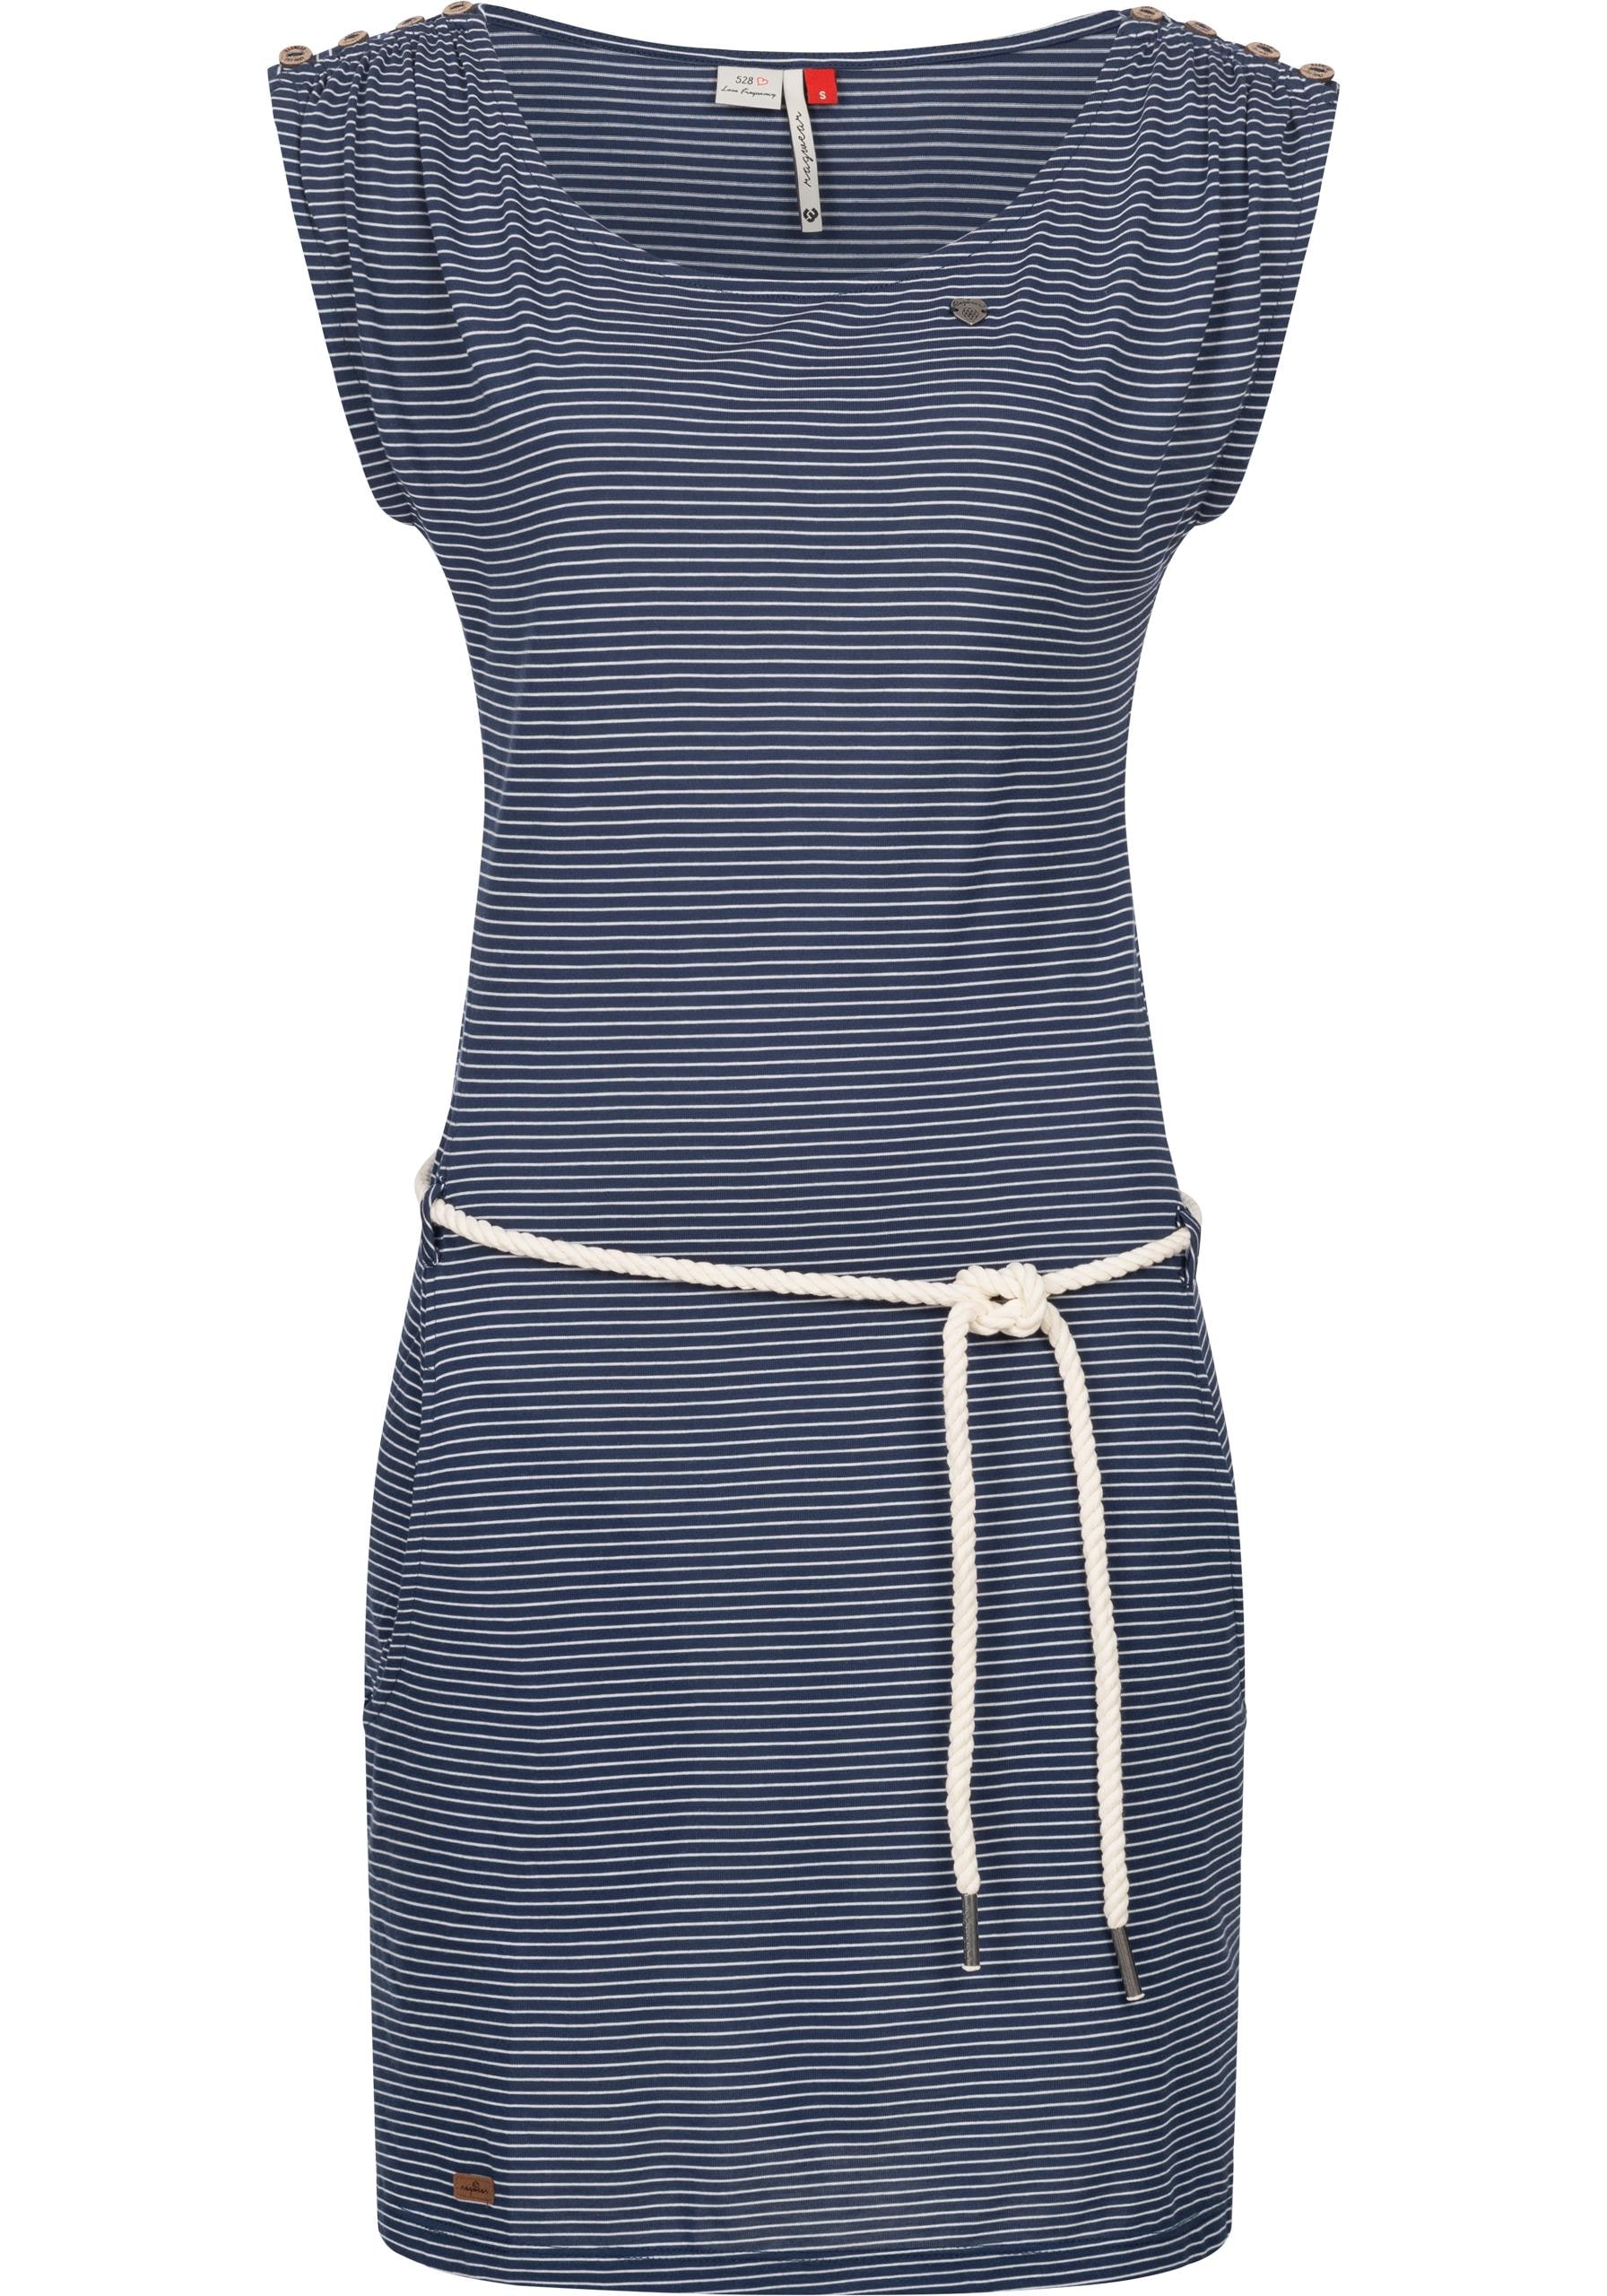 Ragwear Shirtkleid »Chego Stripes Intl.«, stylisches shoppen | Sommerkleid Streifen-Muster walking I\'m mit